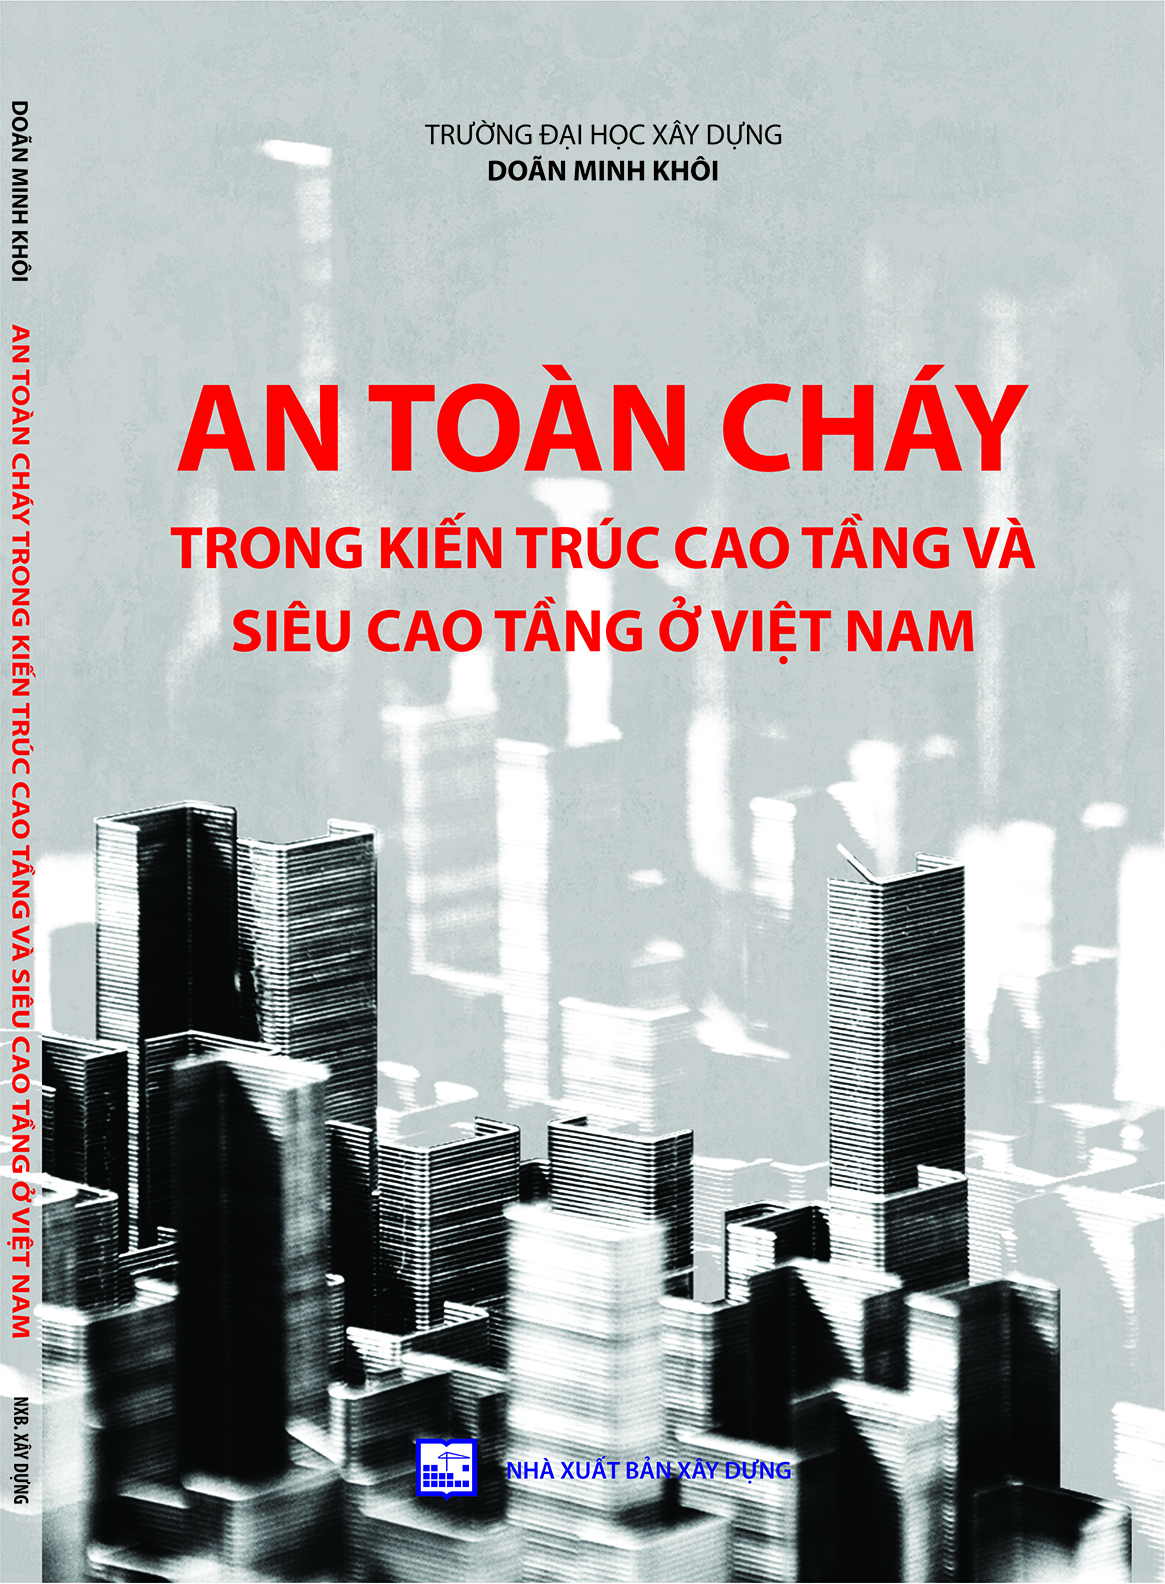 An toàn cháy trong kiến trúc cao tầng và siêu cao tầng ở Việt Nam